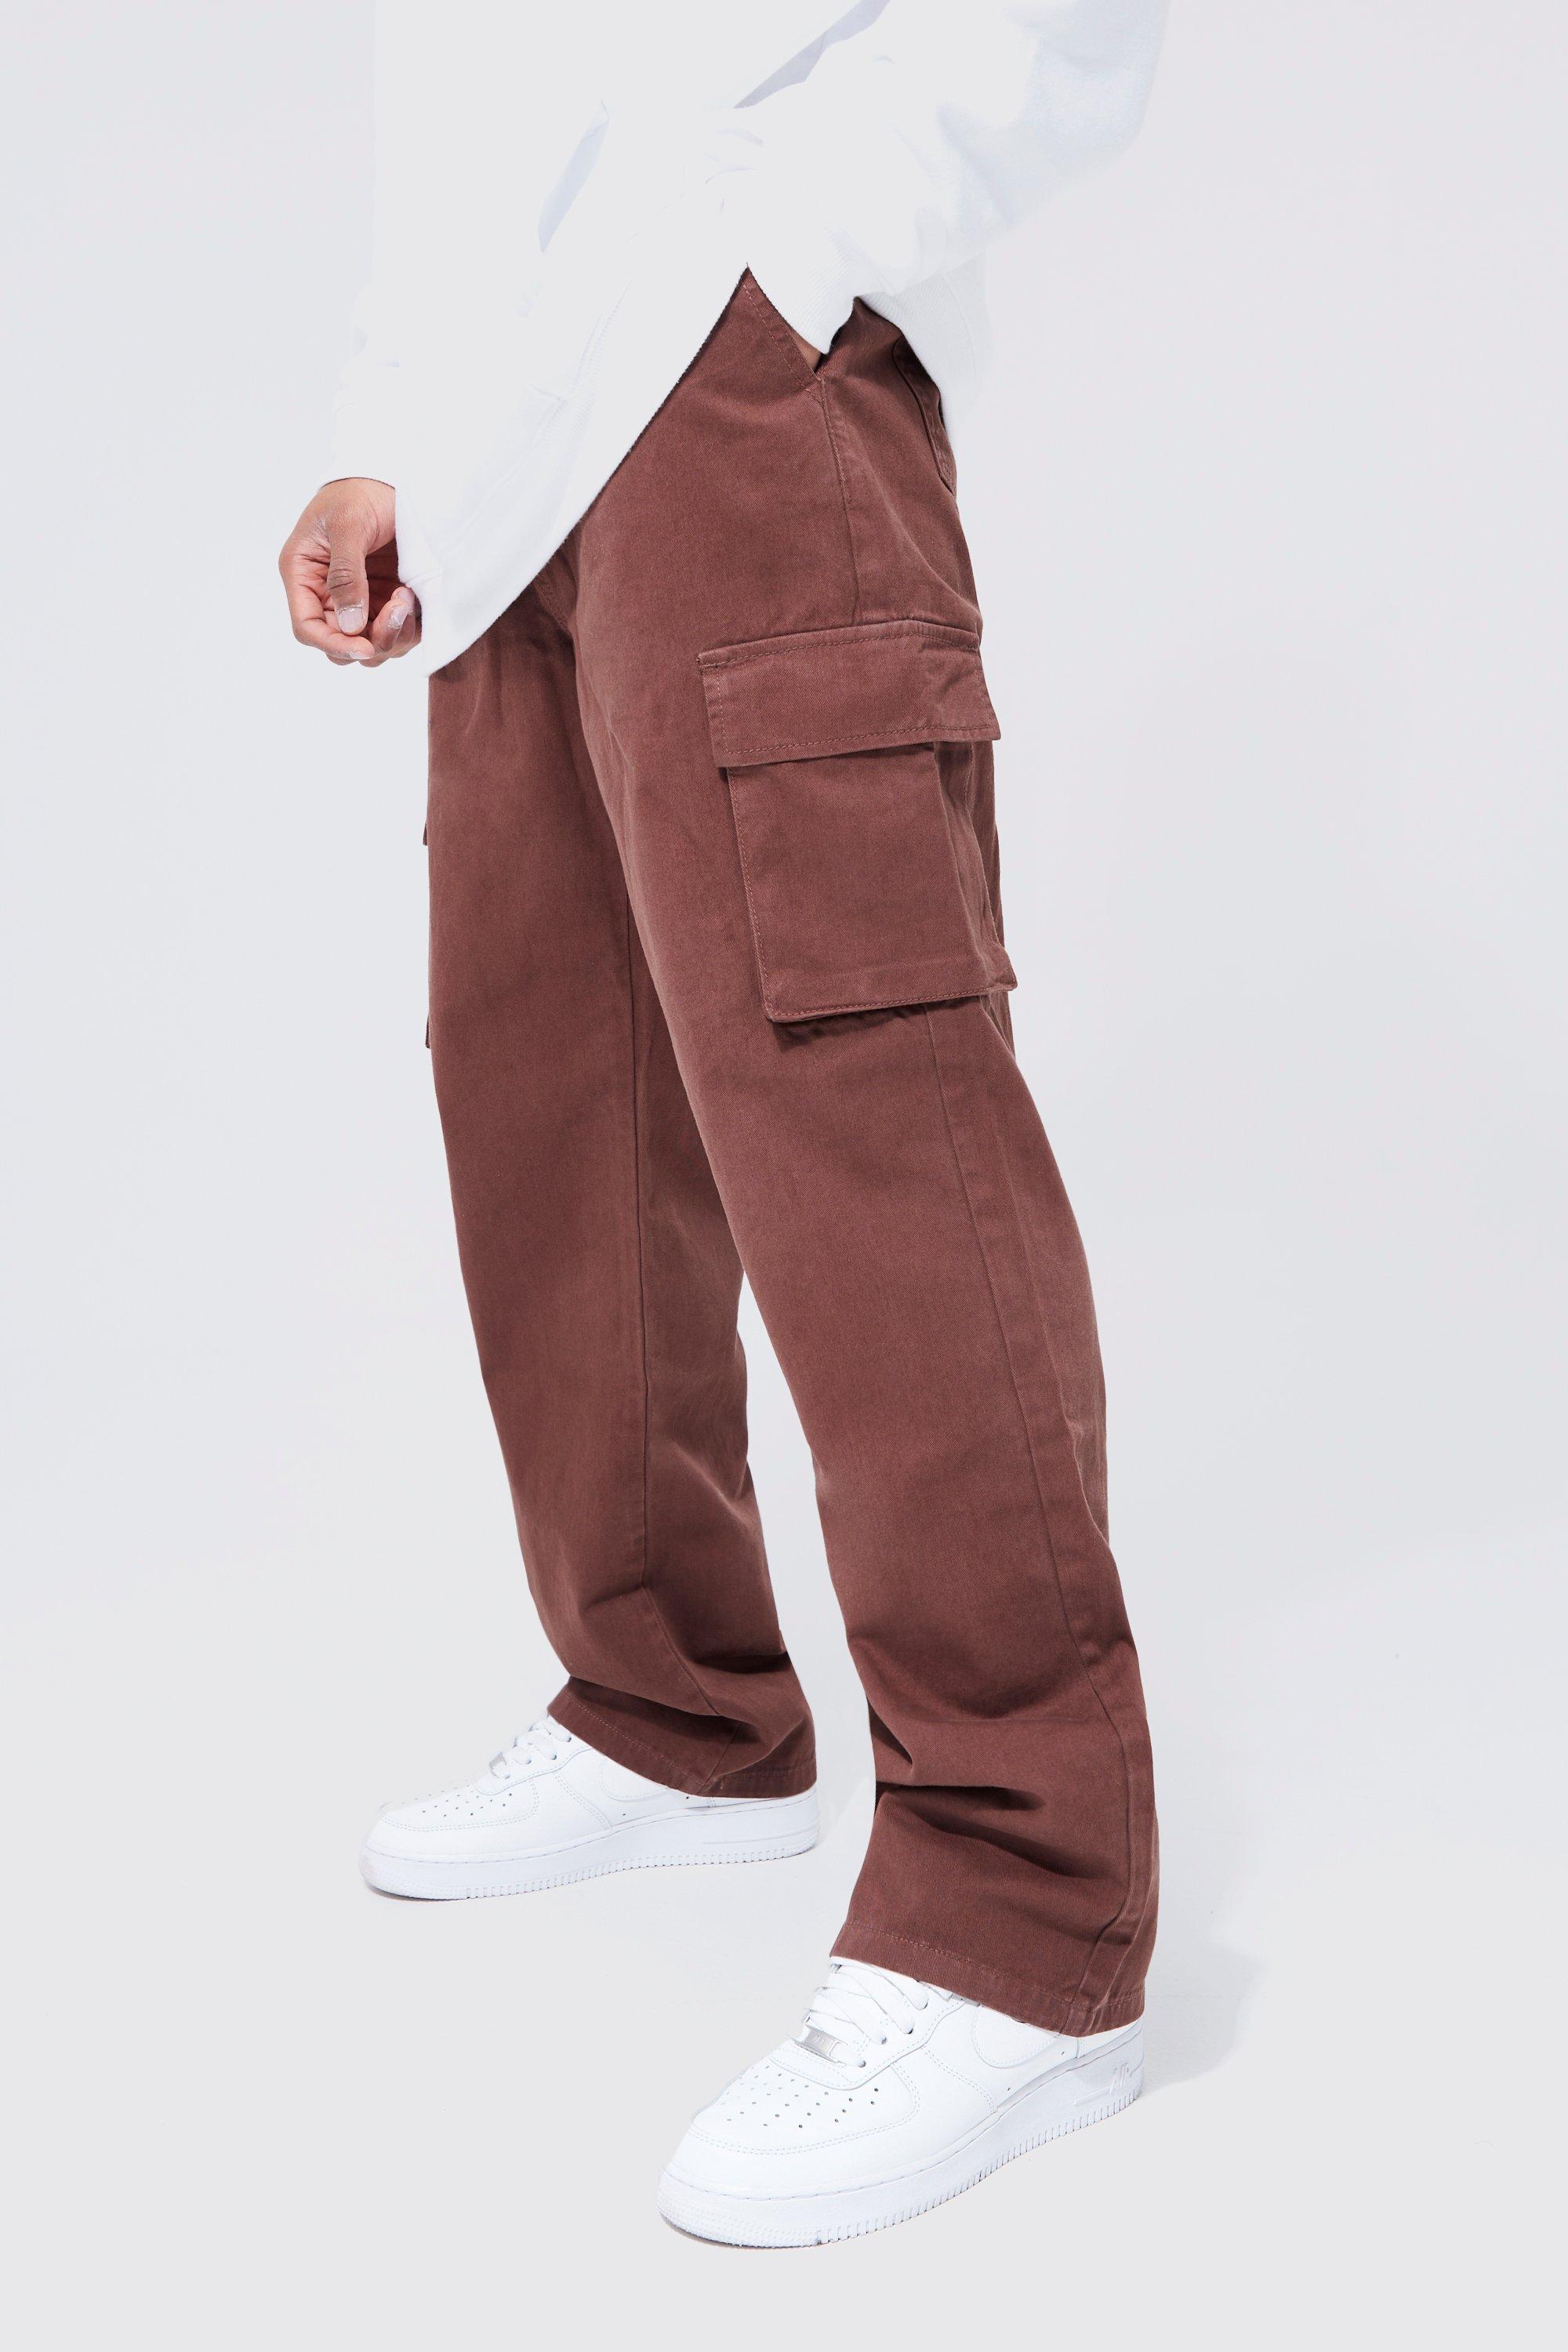 Image of Pantaloni Chino stile Cargo rilassati, Brown